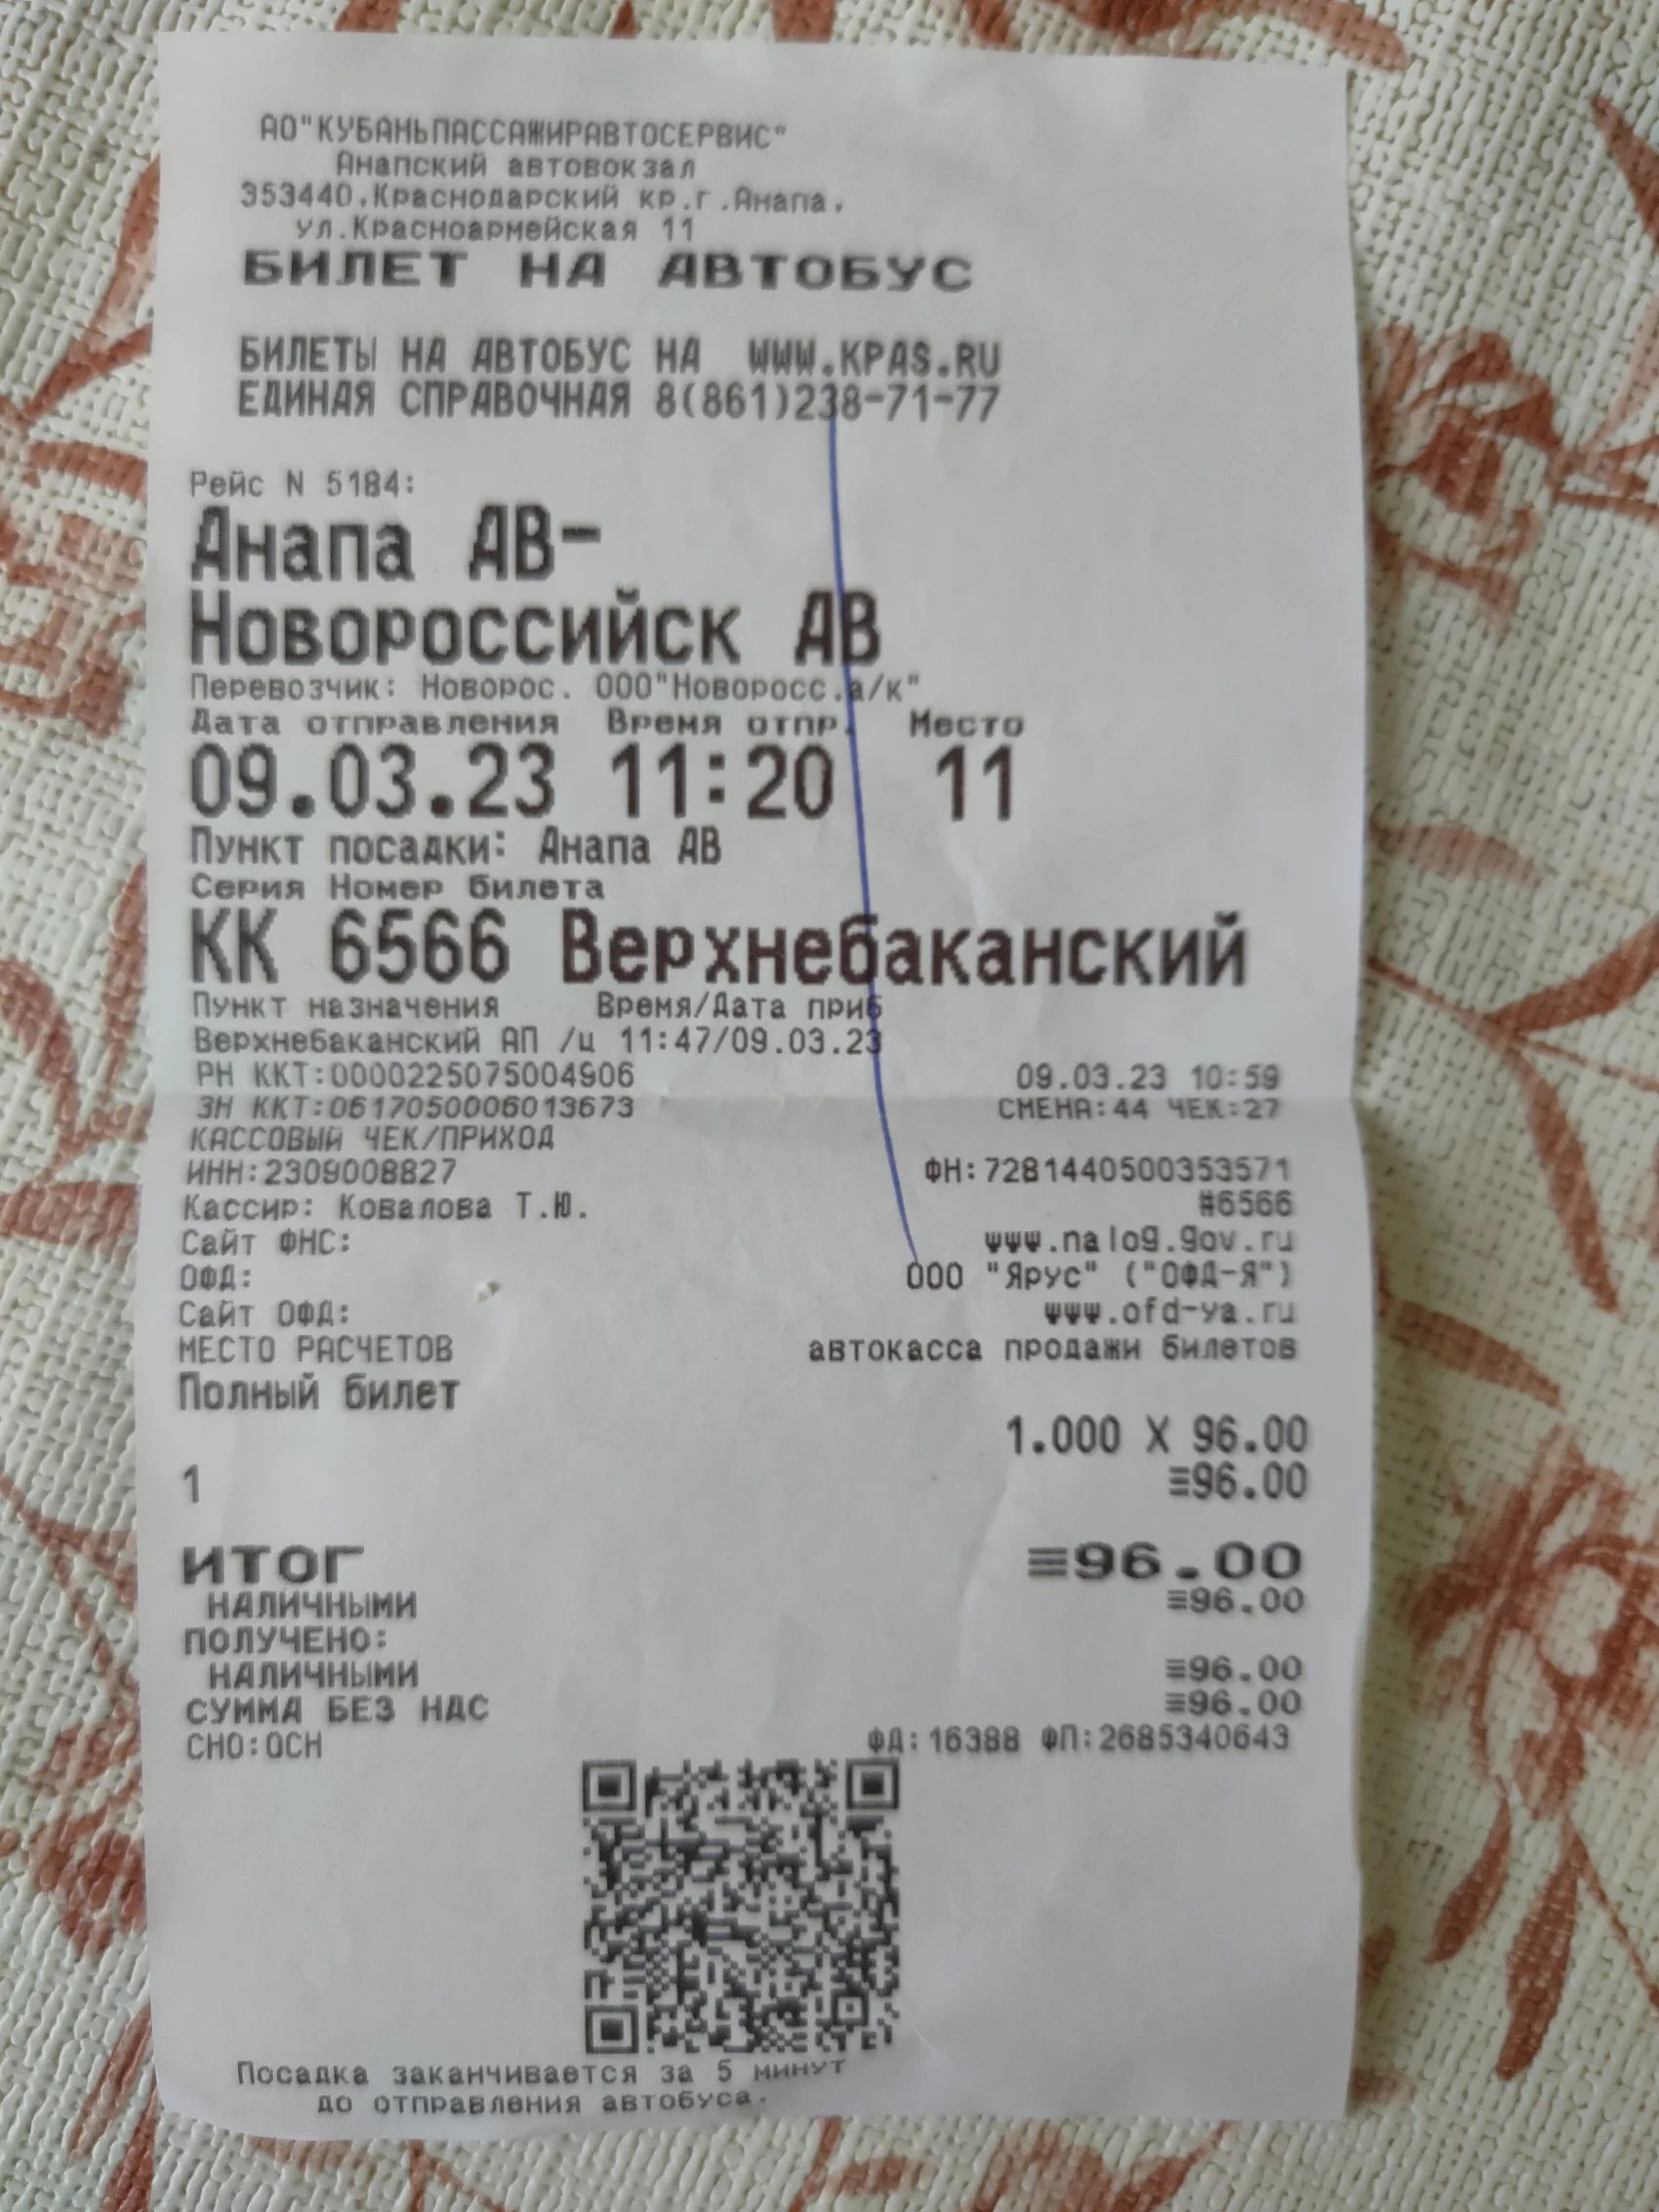 Kpas ru купить билеты на автобус